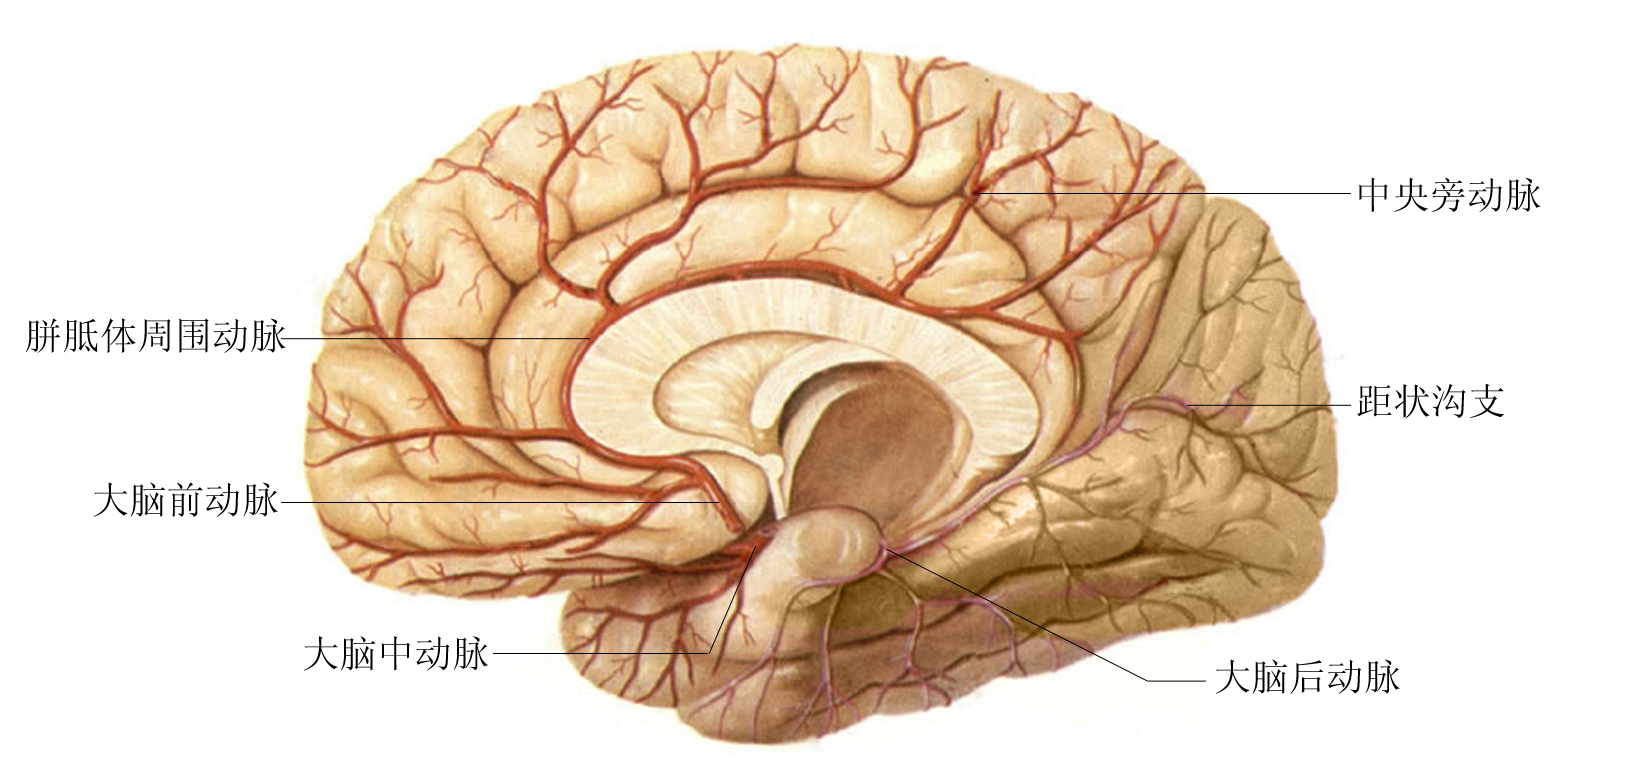 中枢神经系统功能解剖及定位|中枢神经|解剖|顶叶|癫痫|额叶|-健康界